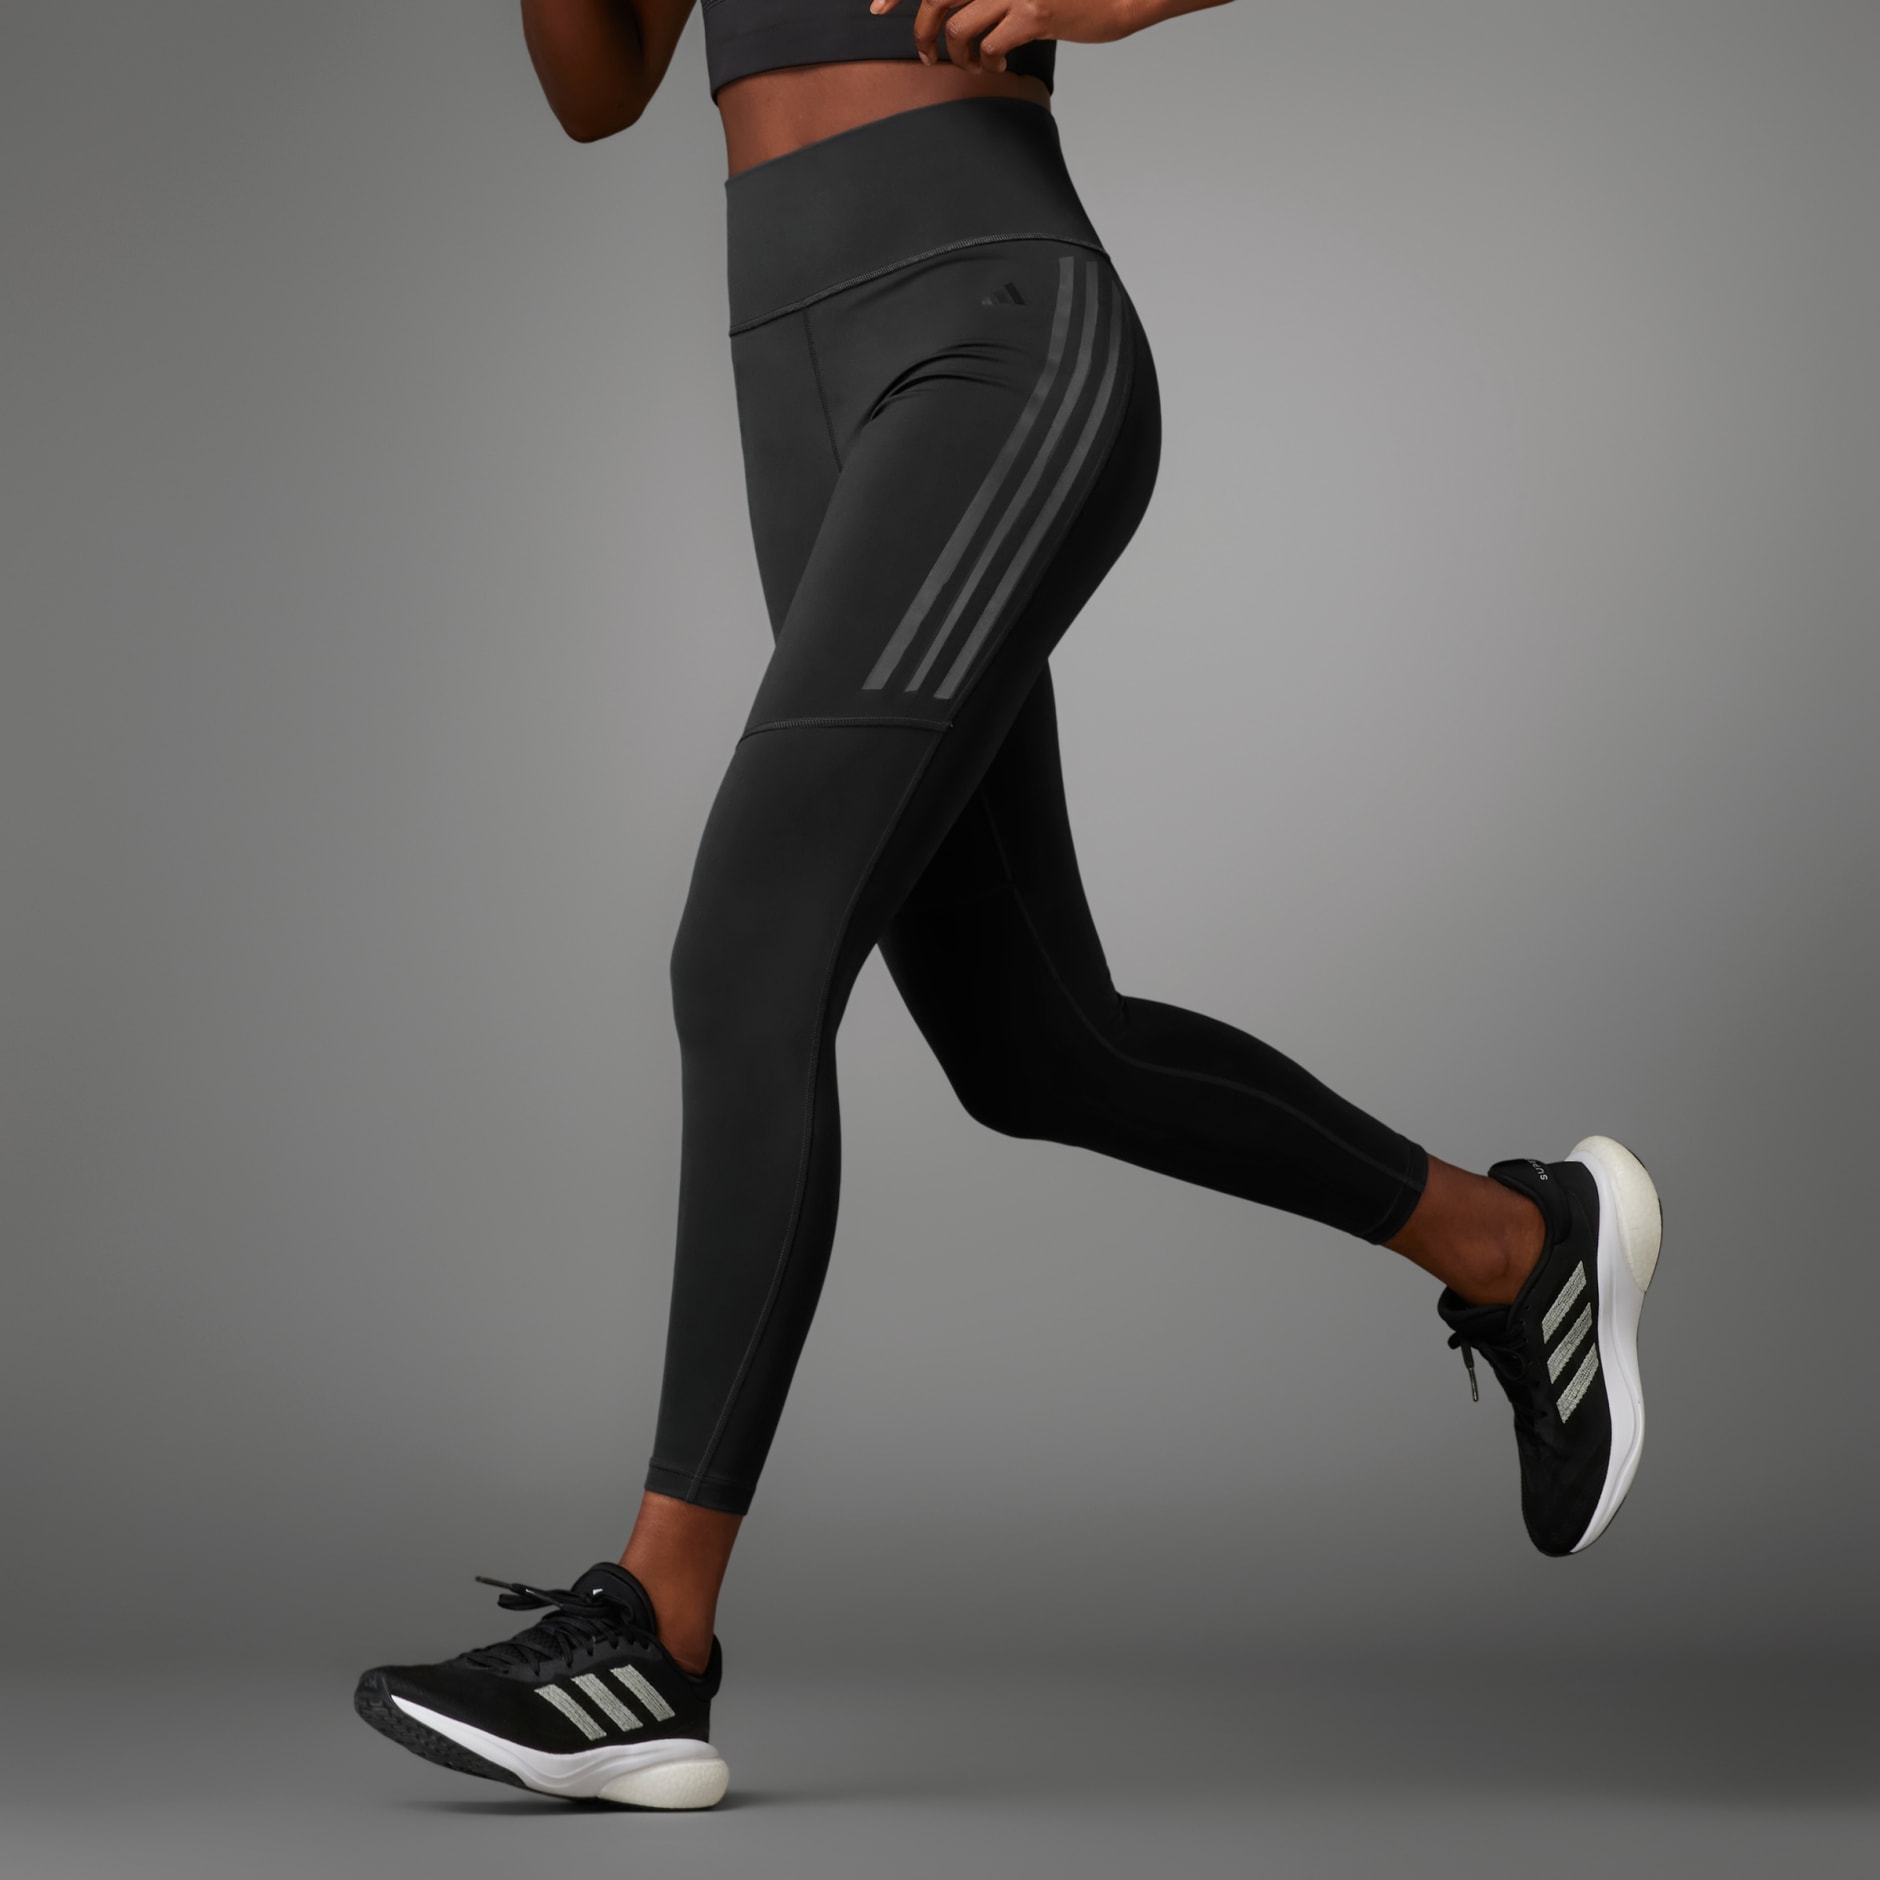 Women's Clothing - Running Essentials 7/8 Leggings - Black